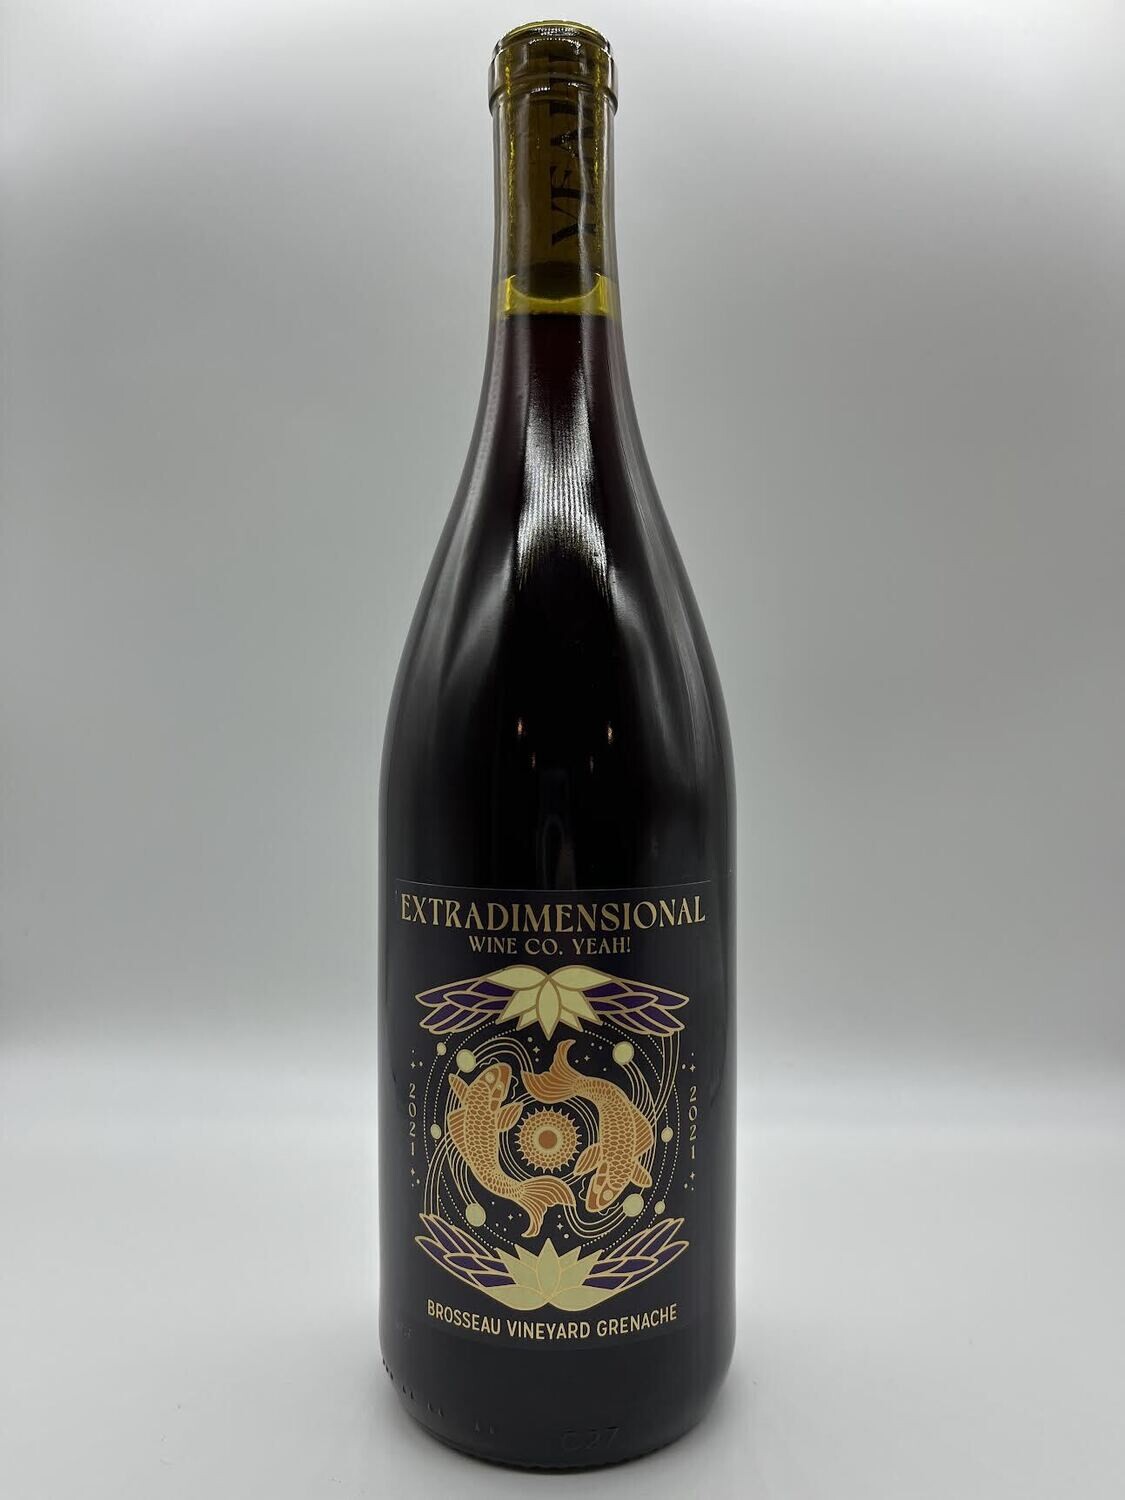 Extradimensional Wine Co Yeah Grenache Brosseau Vineyard 2021